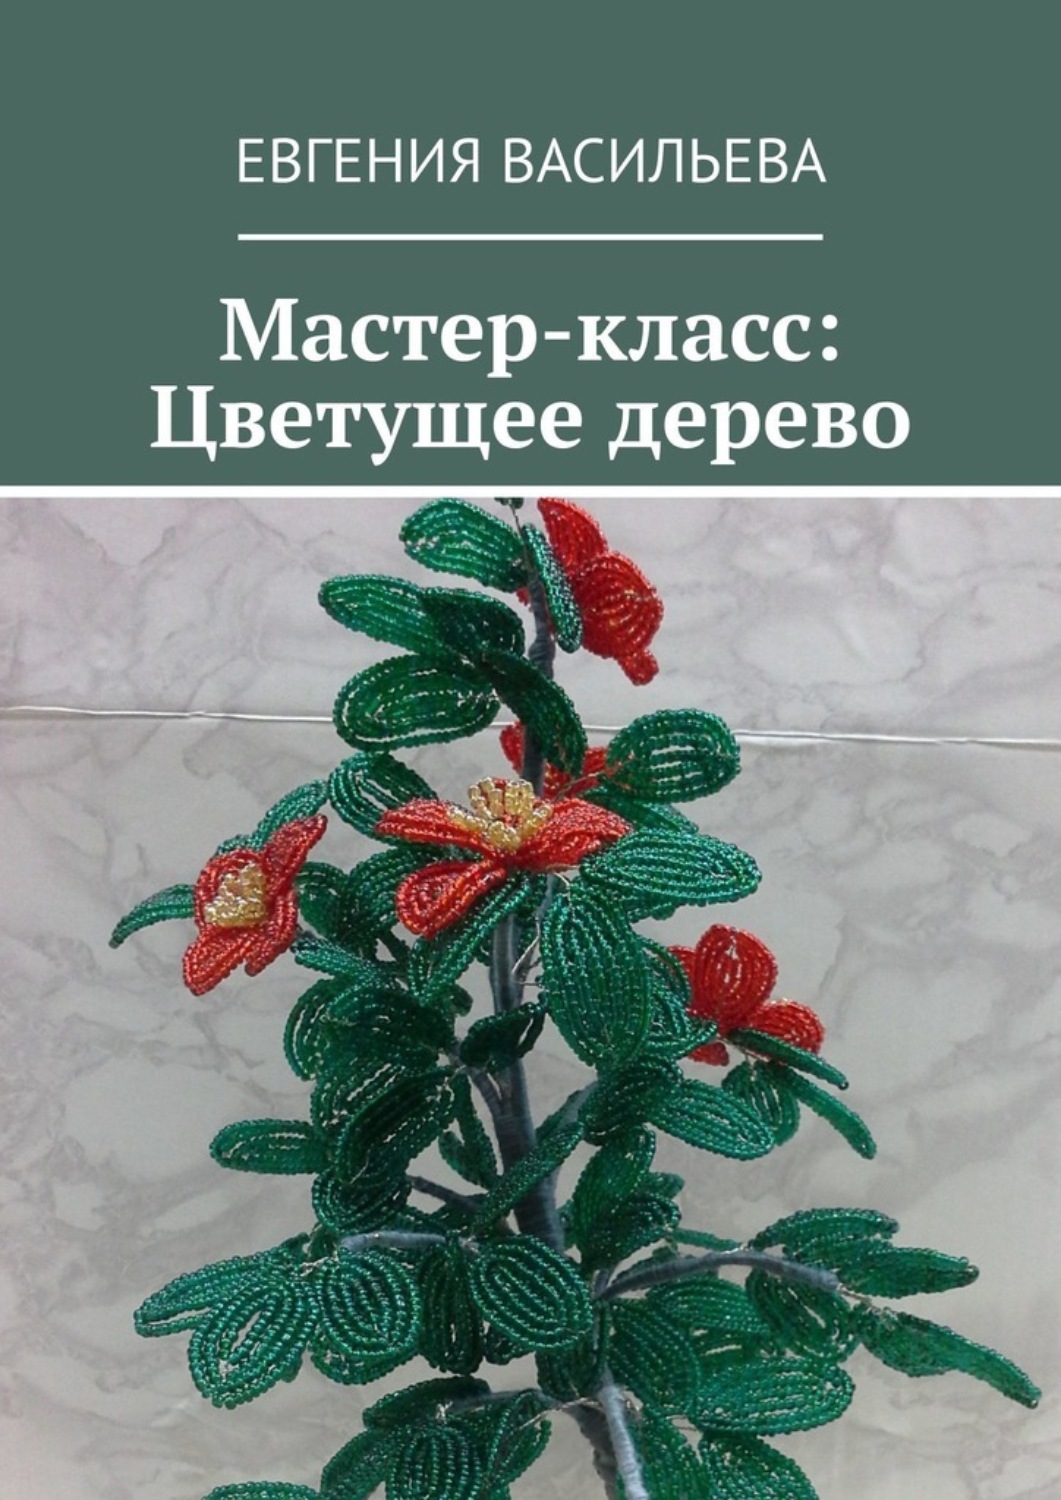 Публикация «„Весеннее дерево из бисера“, Мастер-класс» размещена в разделах